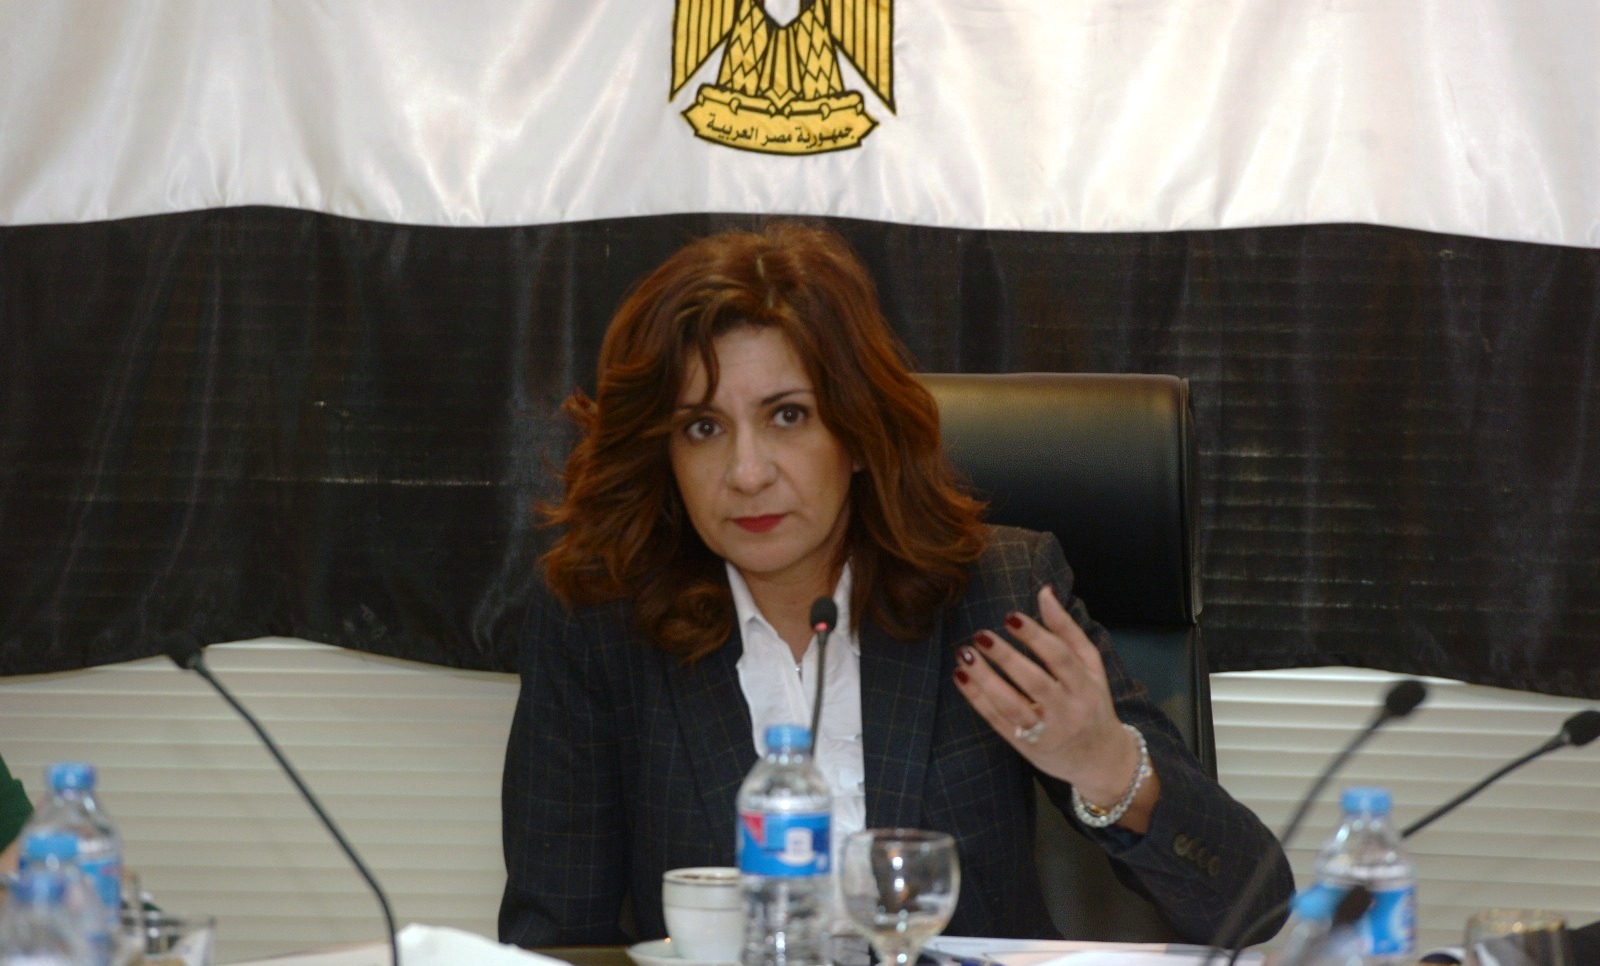   وزيرة الهجرة في مؤتمر تمكين المرأة: اهتمام القيادة السياسية بقضايا المرأة نقطة إنطلاق للأسرة المصرية والمجتمع بأكمله.